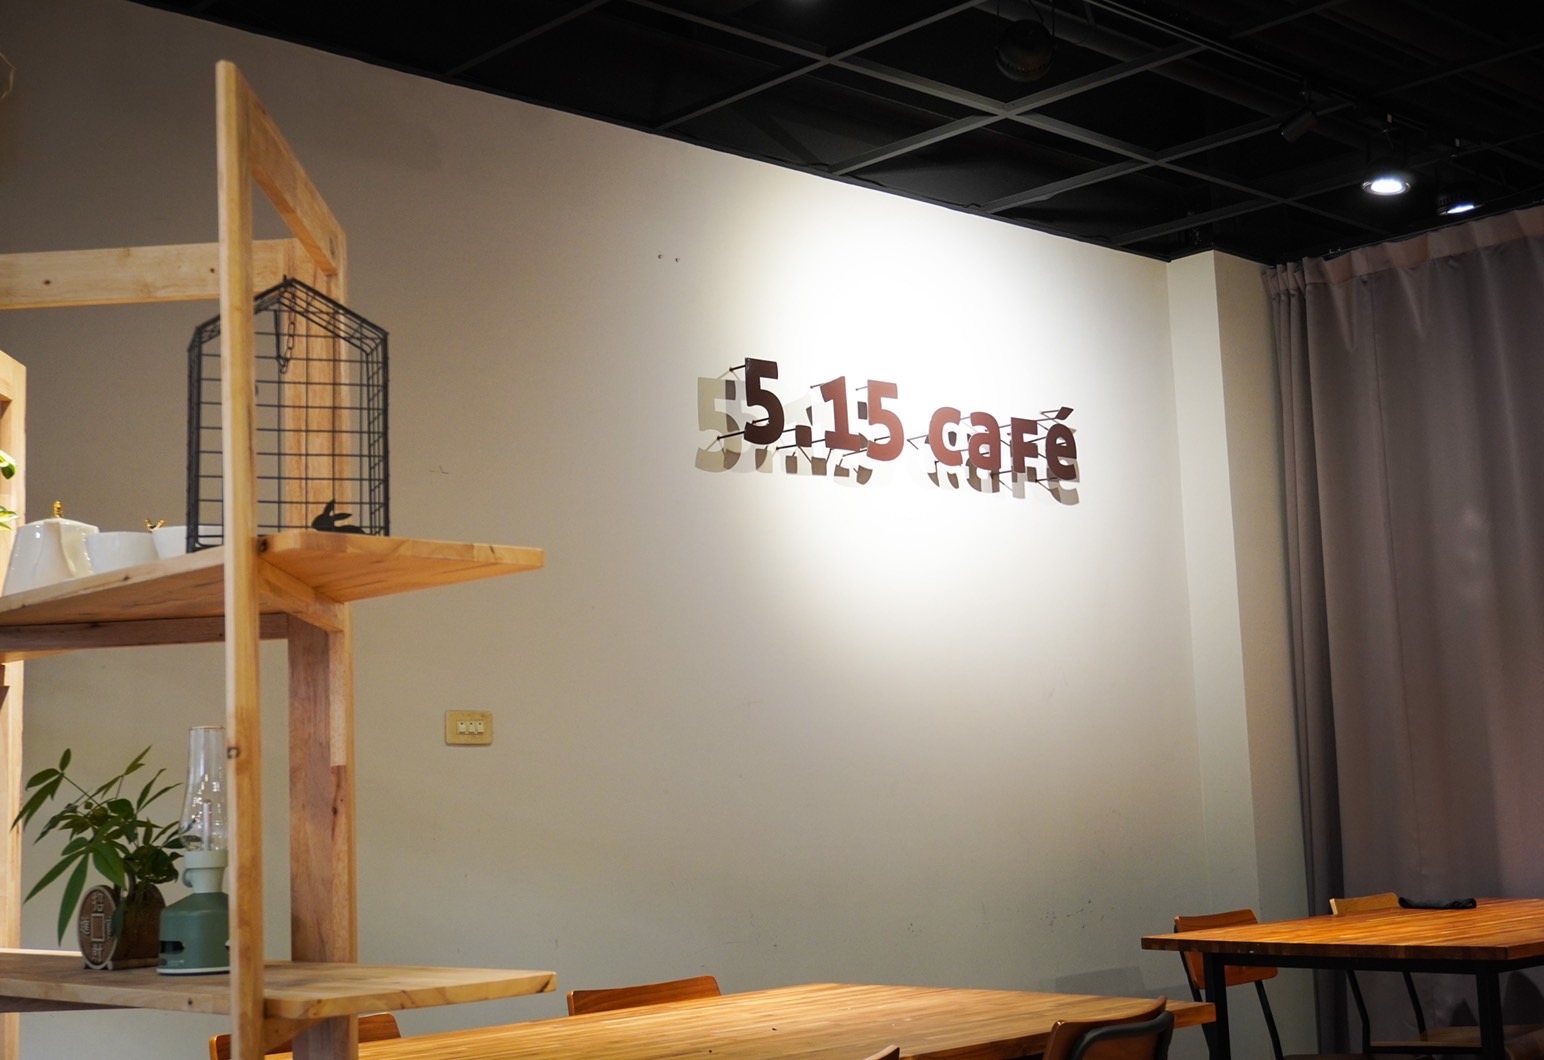 5.15 CAFE 店內空間